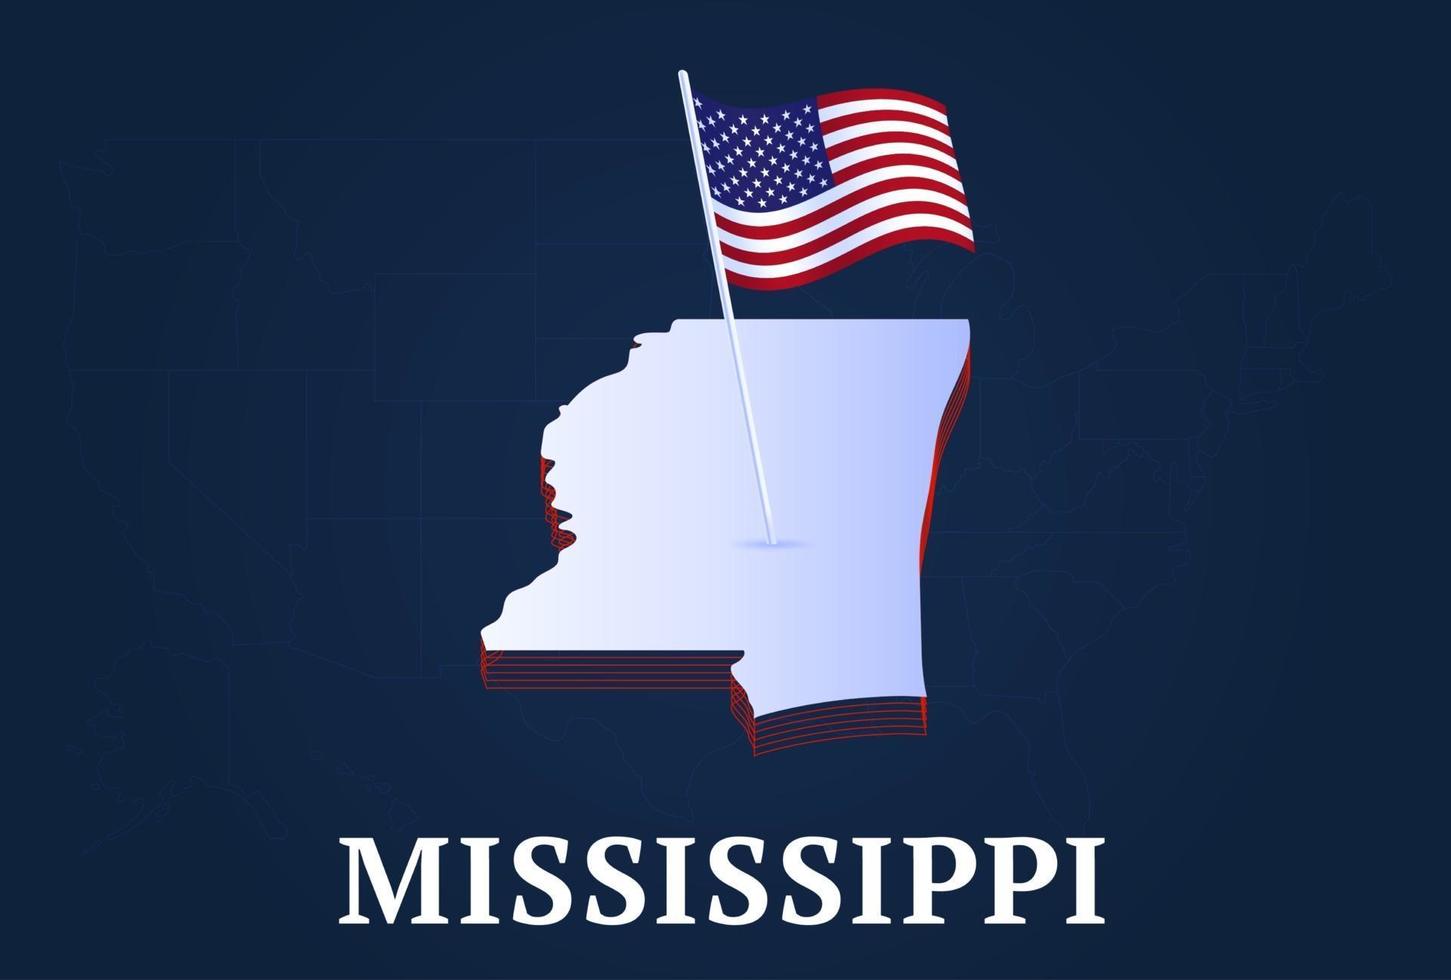 Mississippi staat isometrische kaart en usa nationale vlag 3d isometrische vorm van ons staat vectorillustratie vector